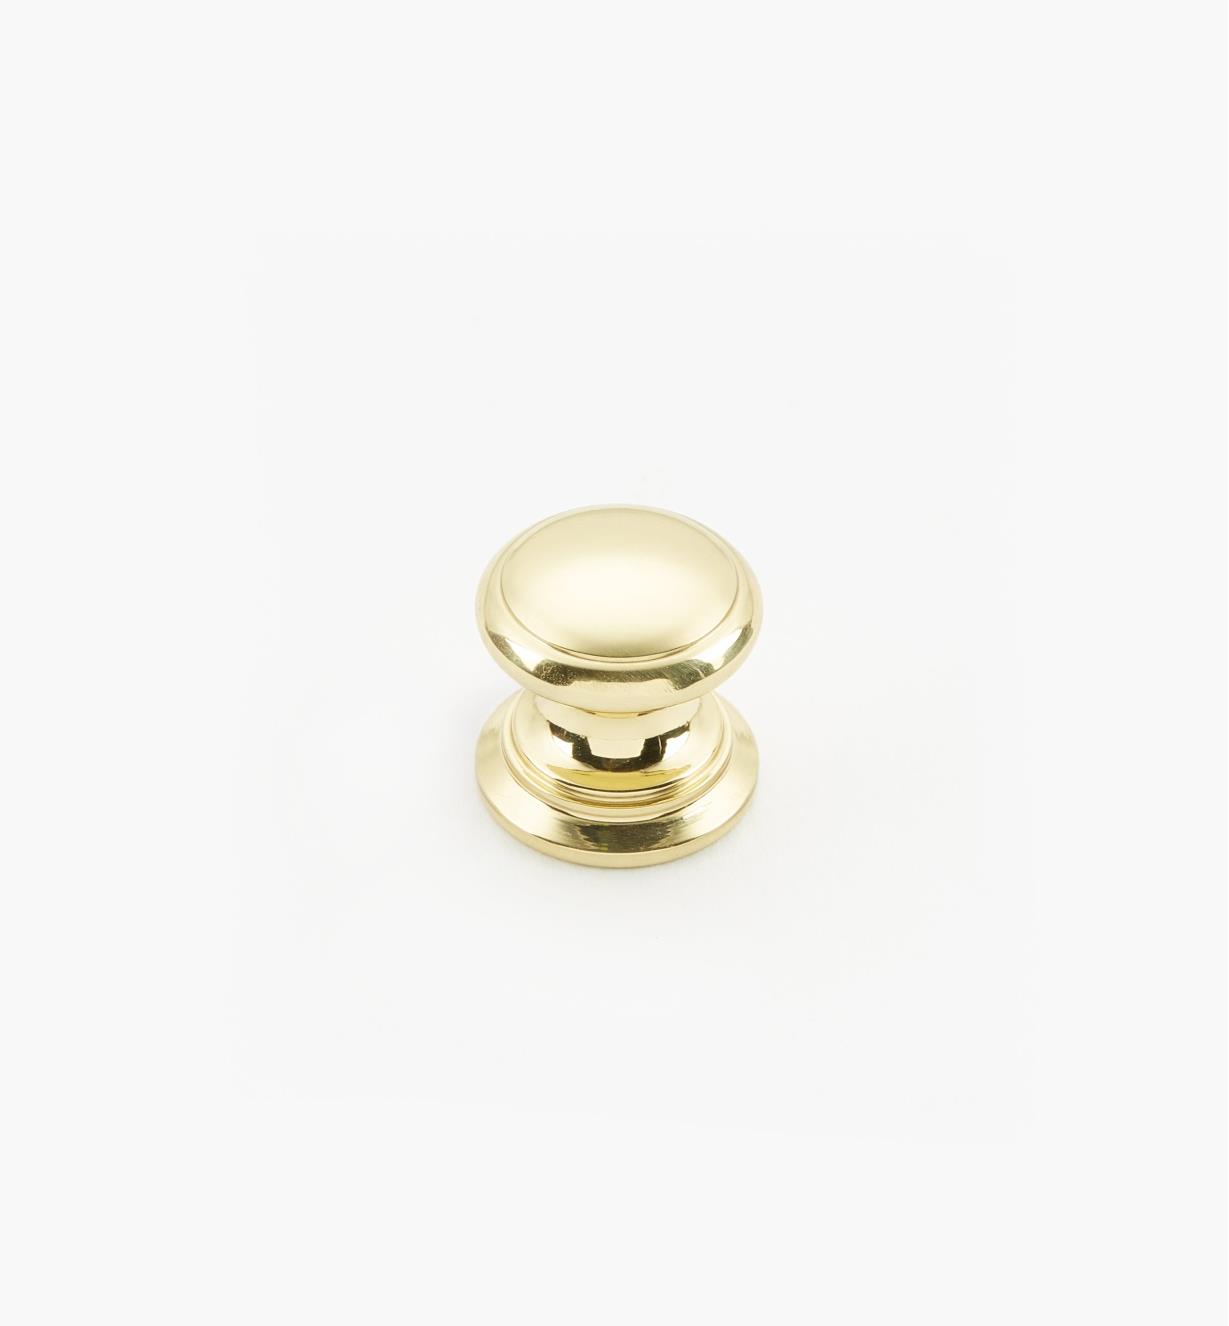 02W1406 - Polished Brass Suite - 5/8" x 5/8" Round Brass Knob